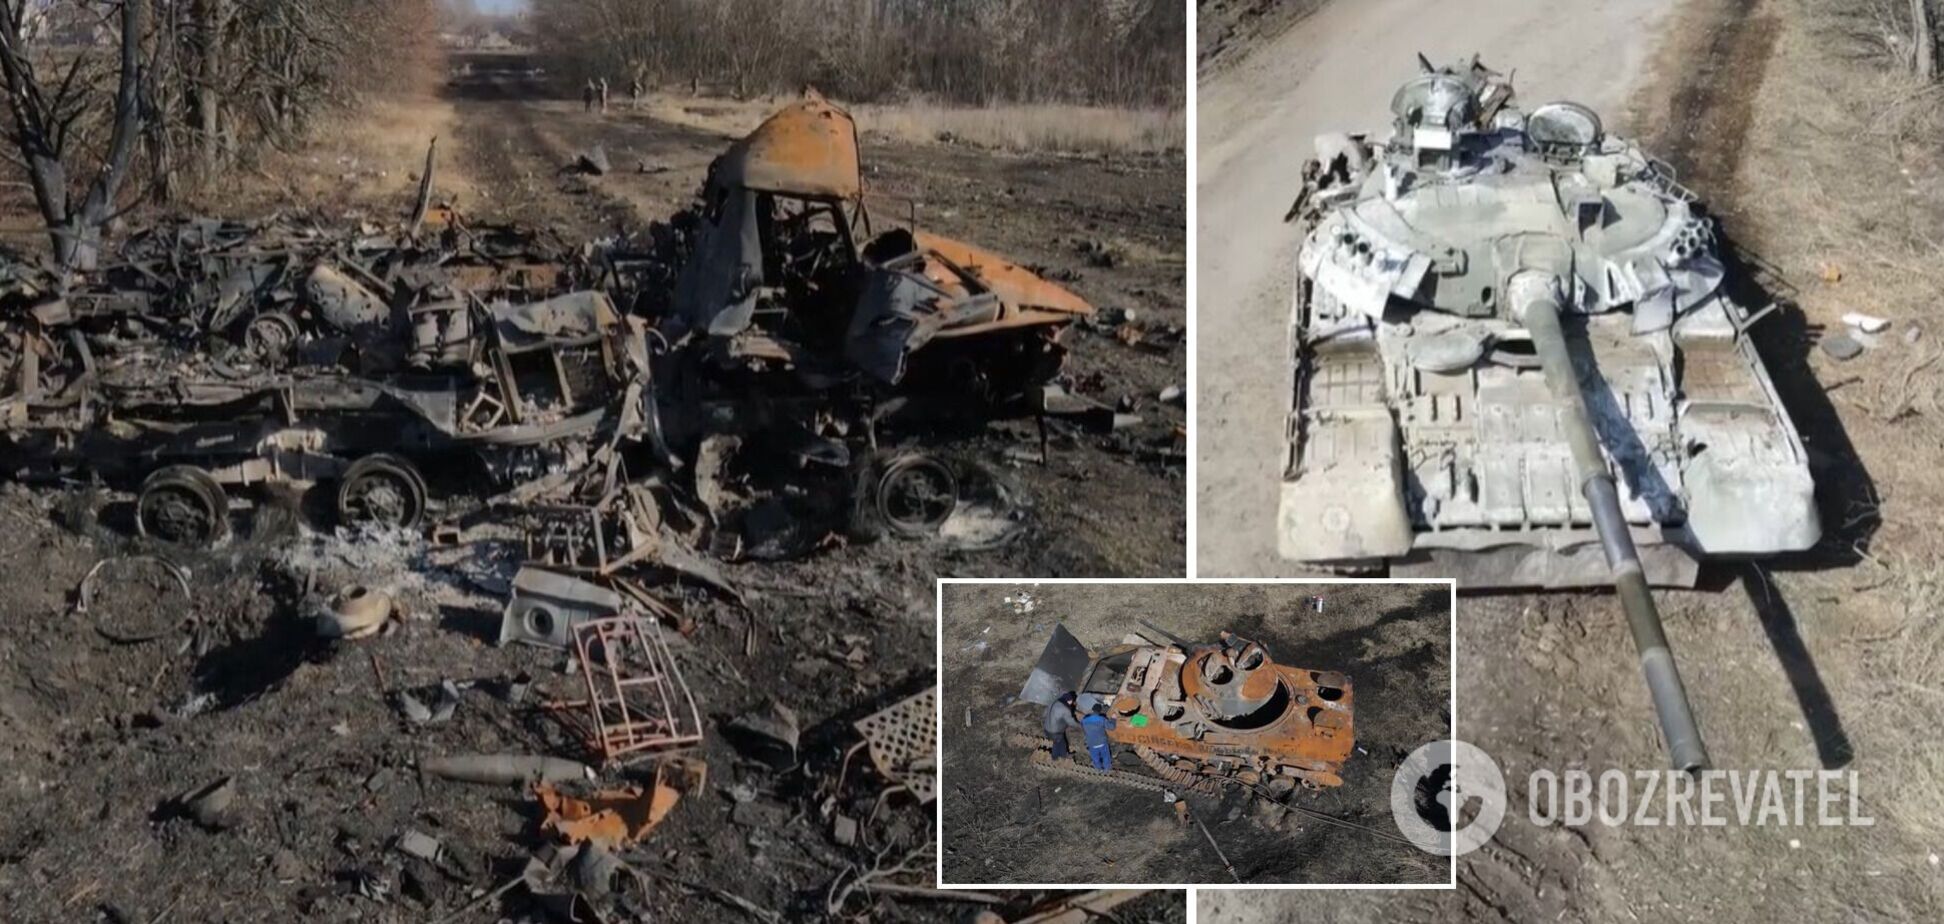 Залишилася випалена земля і металобрухт замість техніки: ЗСУ знищили колону окупантів. Відео